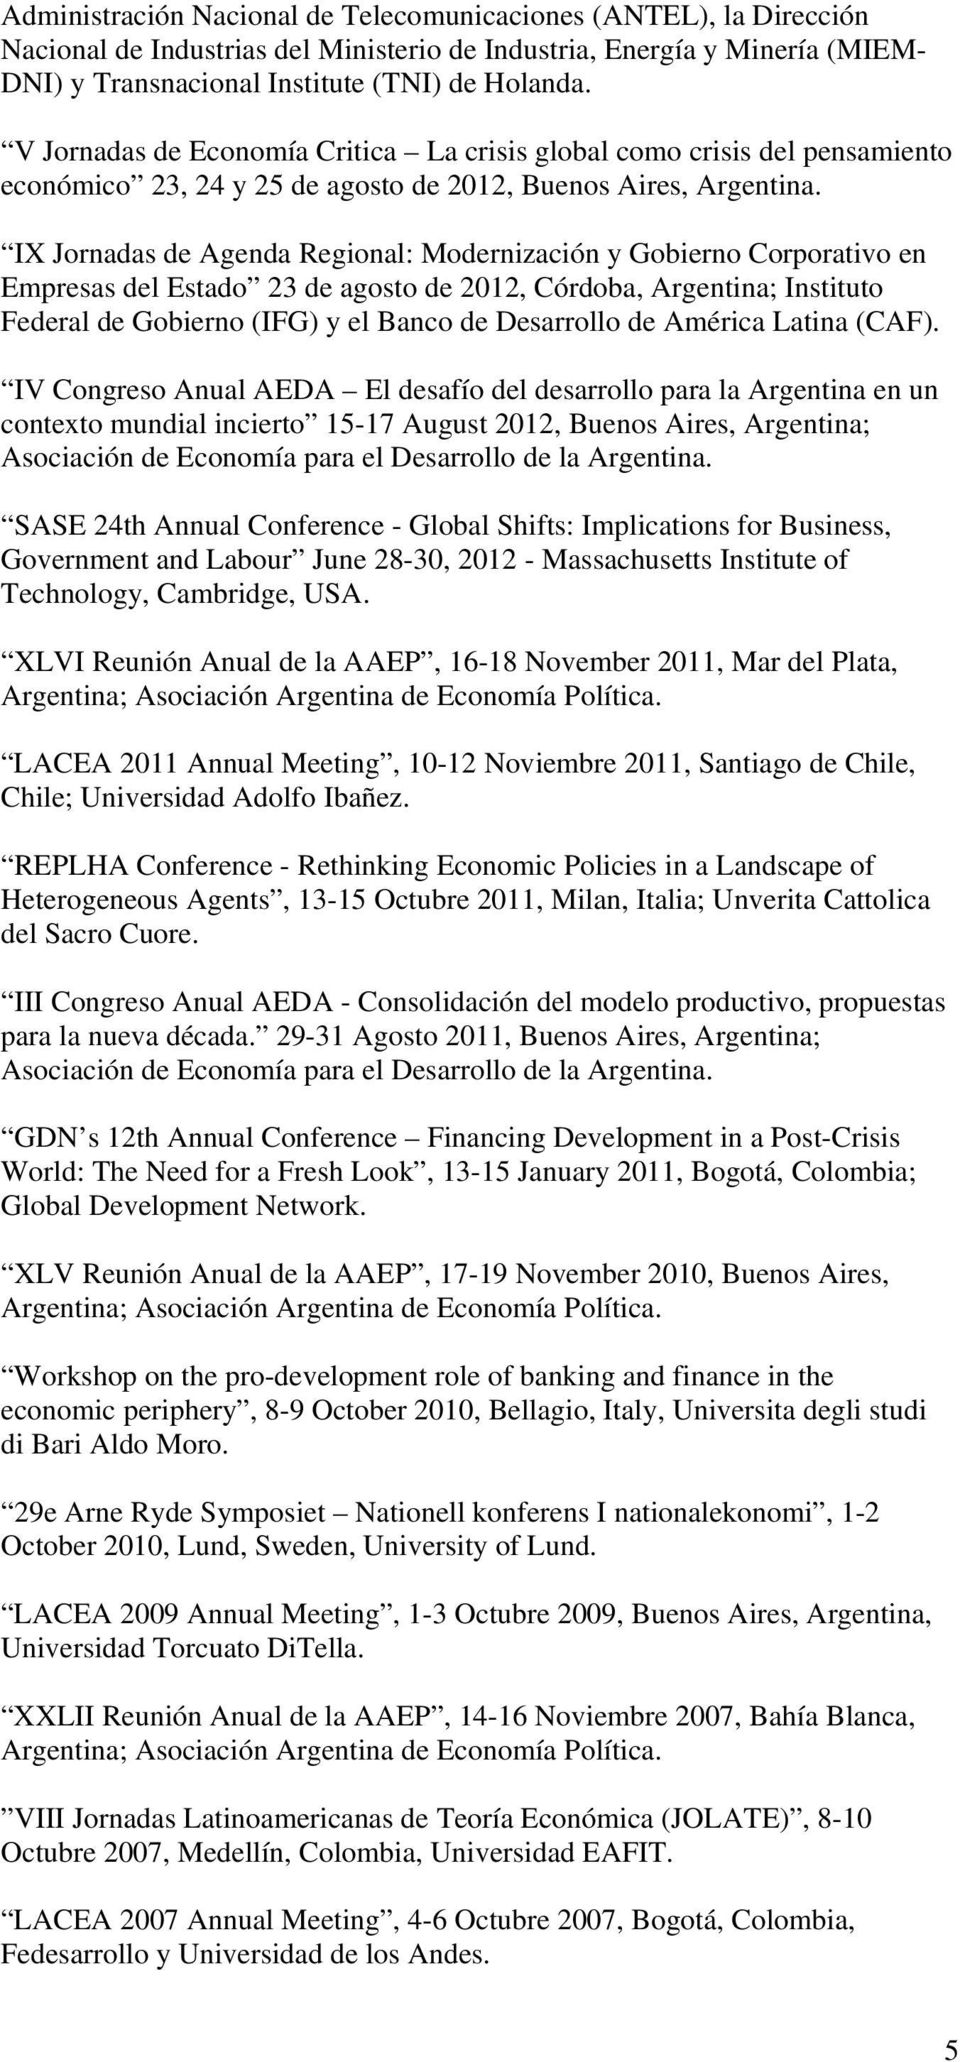 IX Jornadas de Agenda Regional: Modernización y Gobierno Corporativo en Empresas del Estado 23 de agosto de 2012, Córdoba, Argentina; Instituto Federal de Gobierno (IFG) y el Banco de Desarrollo de